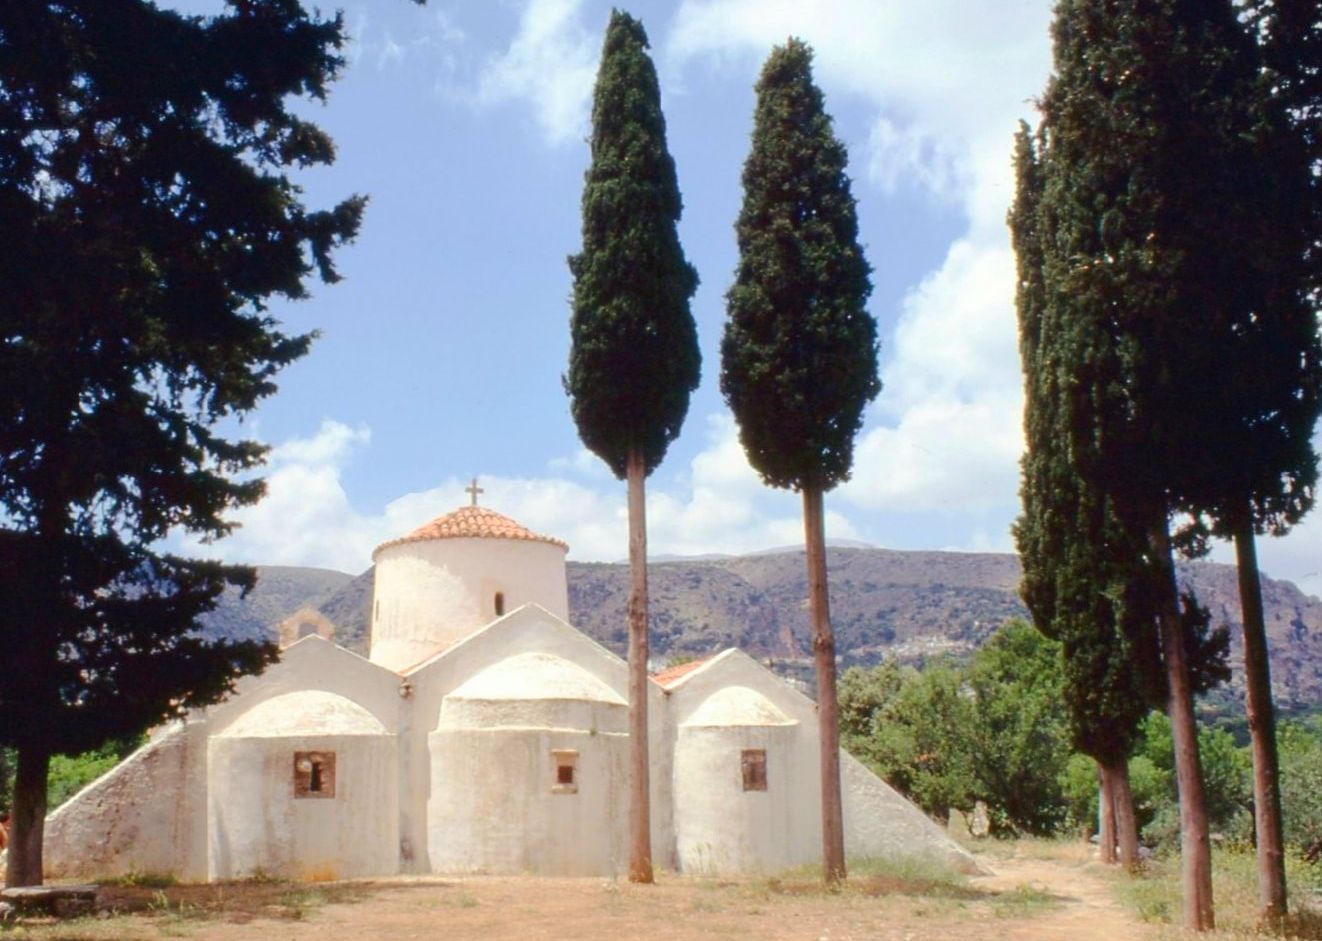 Panagia Kera Church in Dhikti Mountains above Agios Nikolaos on the Greek Island of Crete